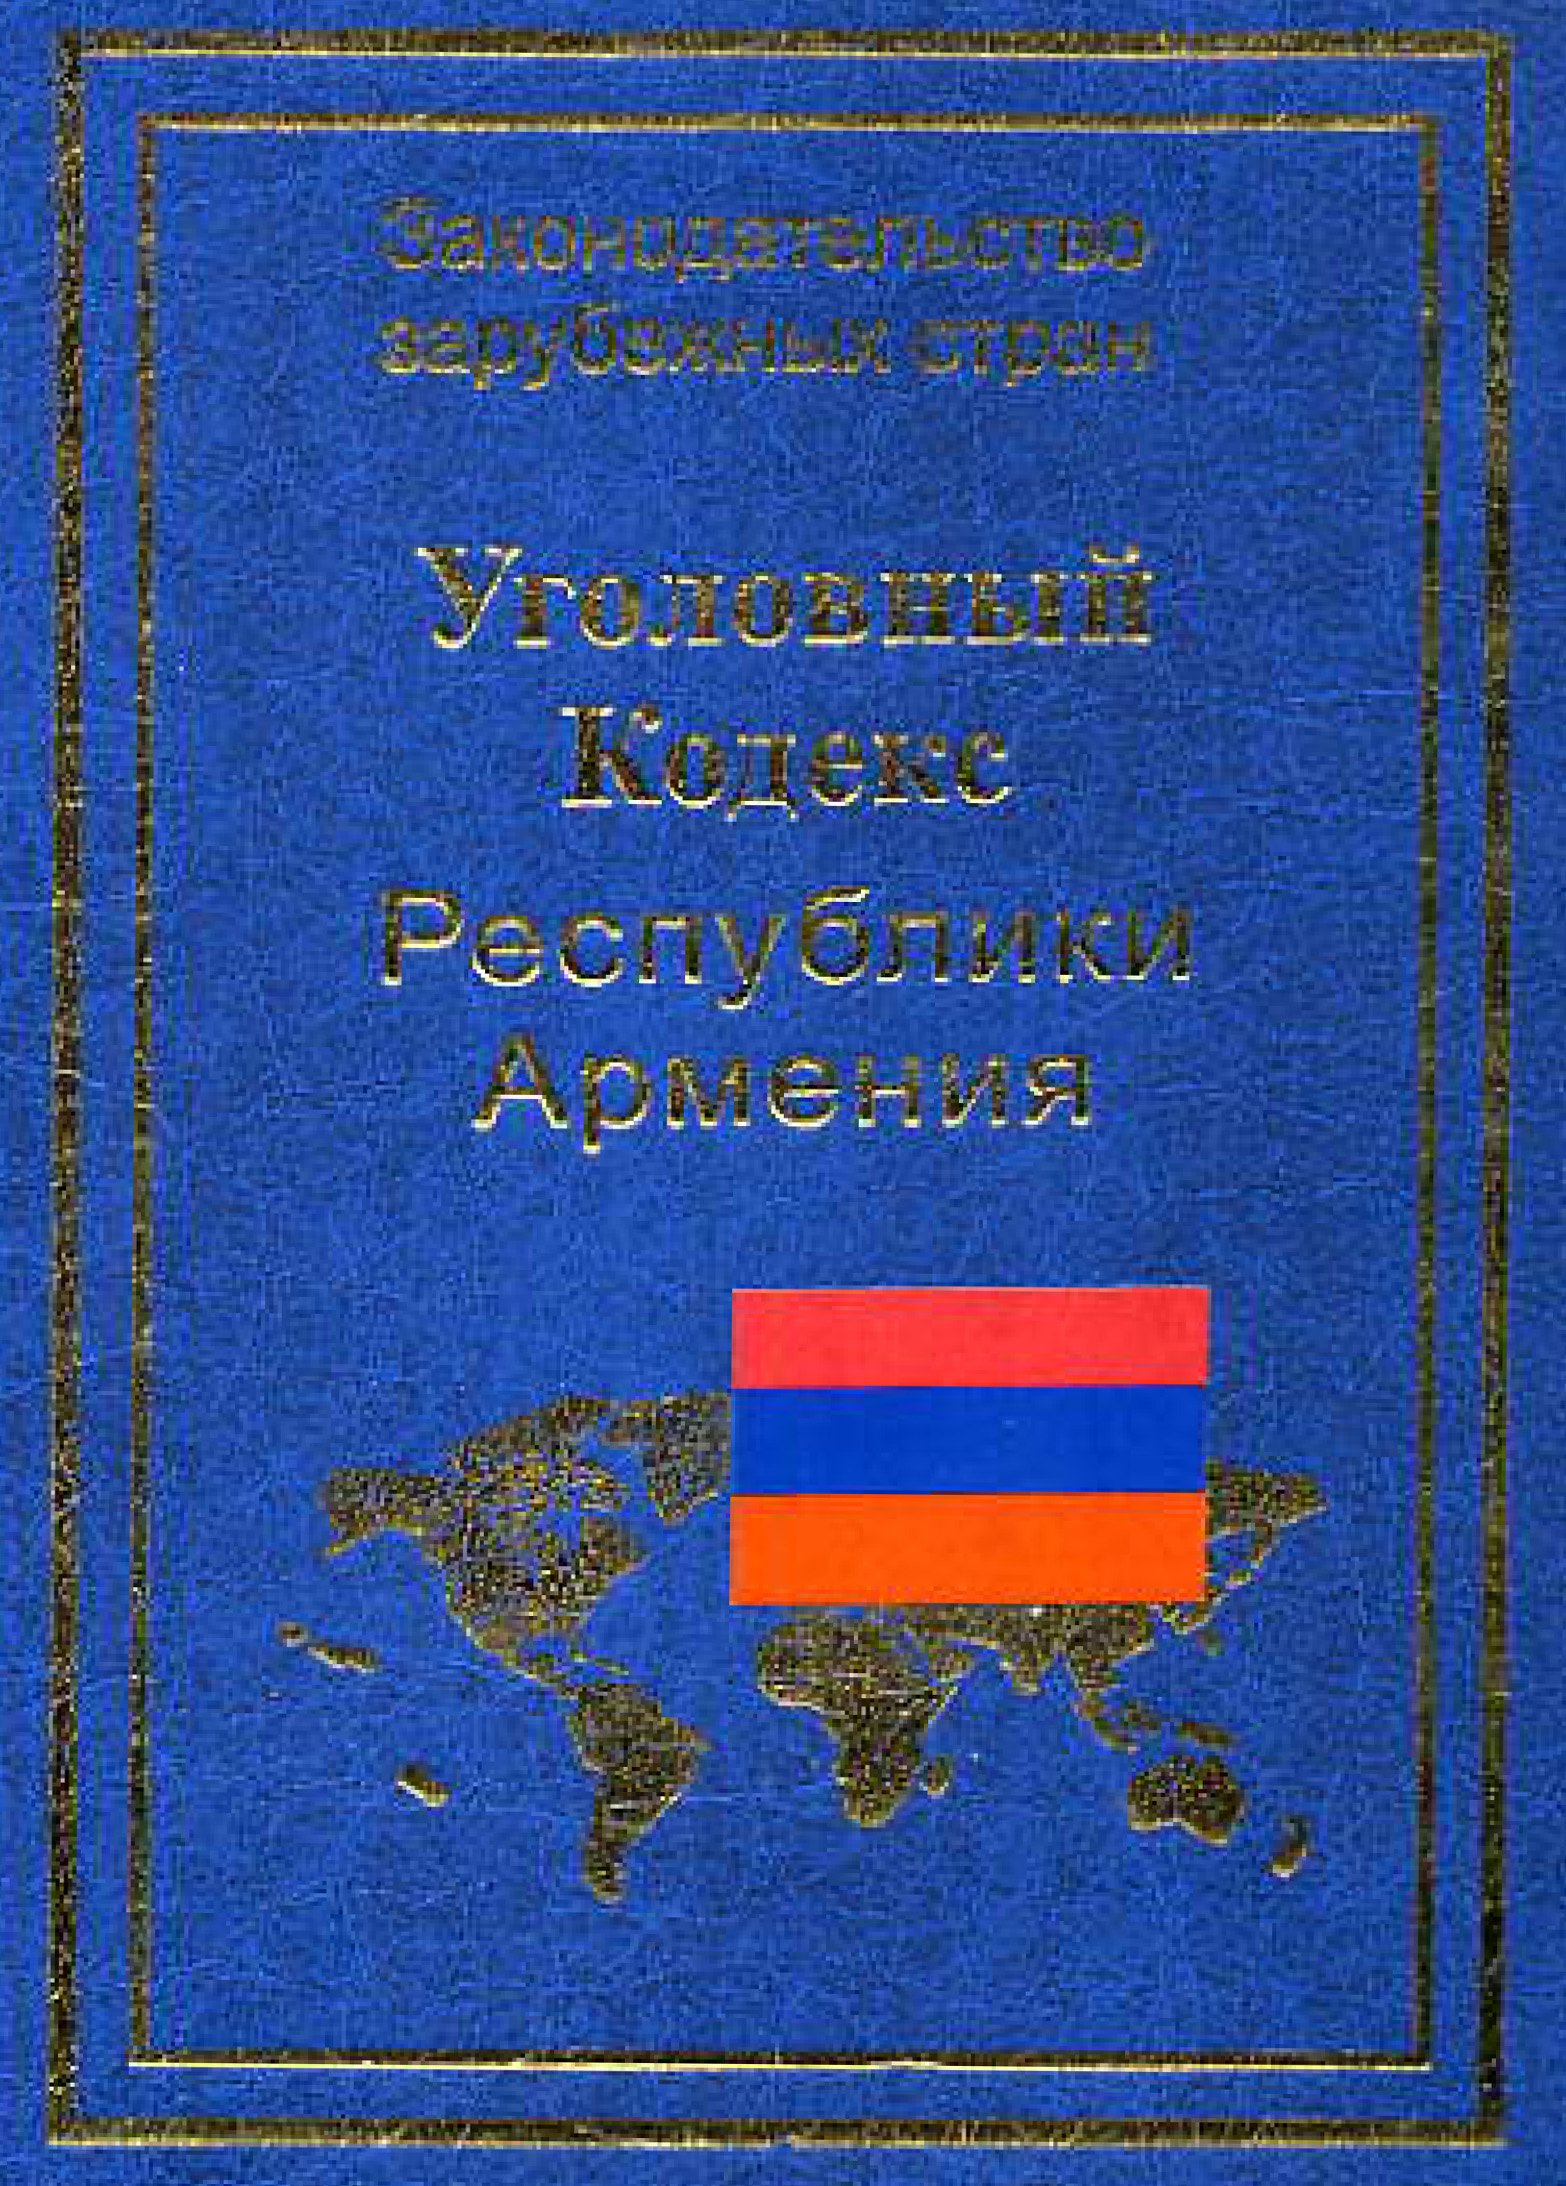 Книга Уголовный кодекс Республики Армения из серии , созданная Р. Авакян, может относится к жанру Юриспруденция, право, Юриспруденция, право. Стоимость электронной книги Уголовный кодекс Республики Армения с идентификатором 11132571 составляет 89.90 руб.